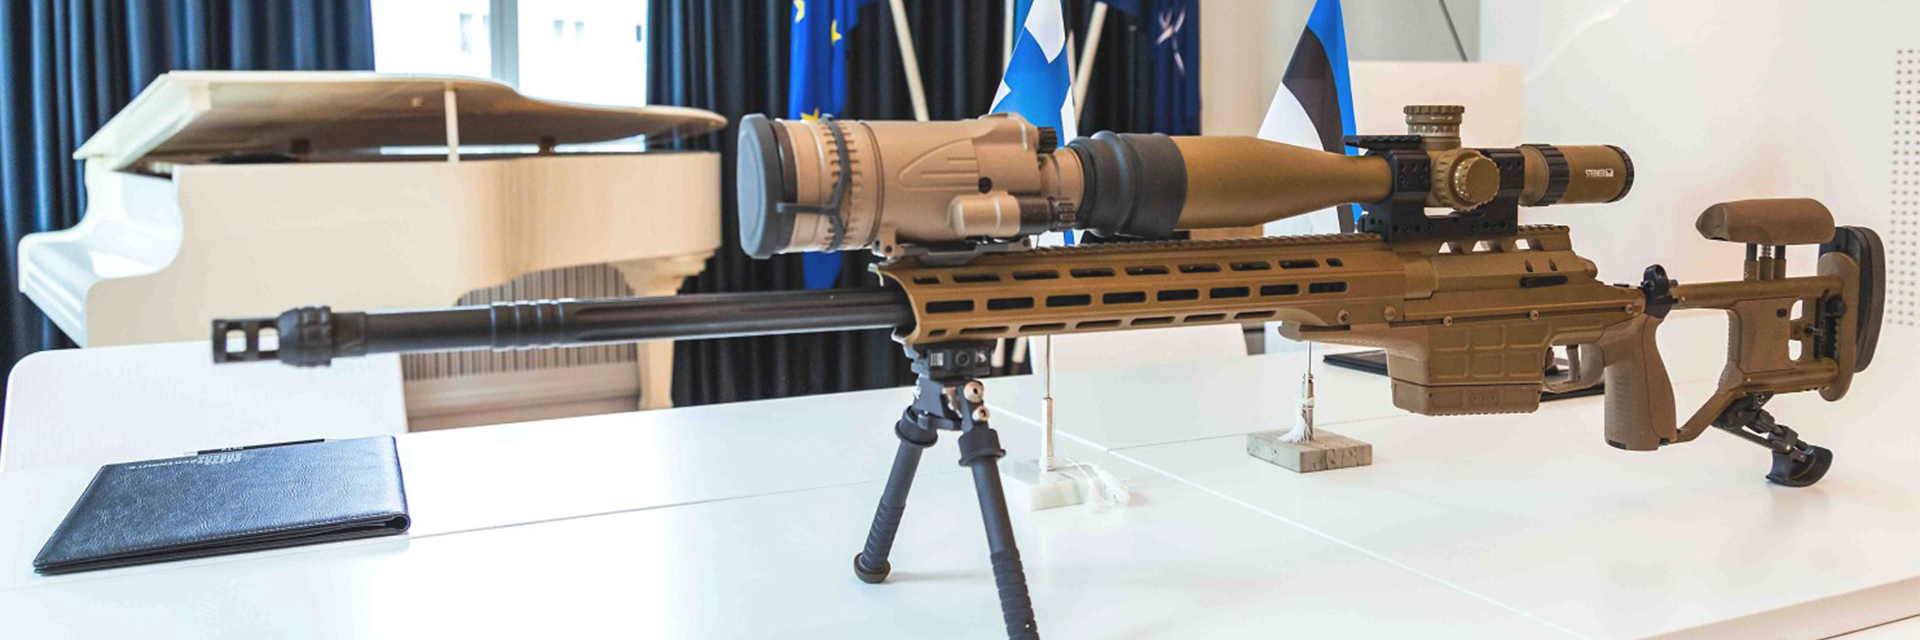 Mit Estland vertraut ein weiteres Nato-Land auf Steiner Zielfernrohre